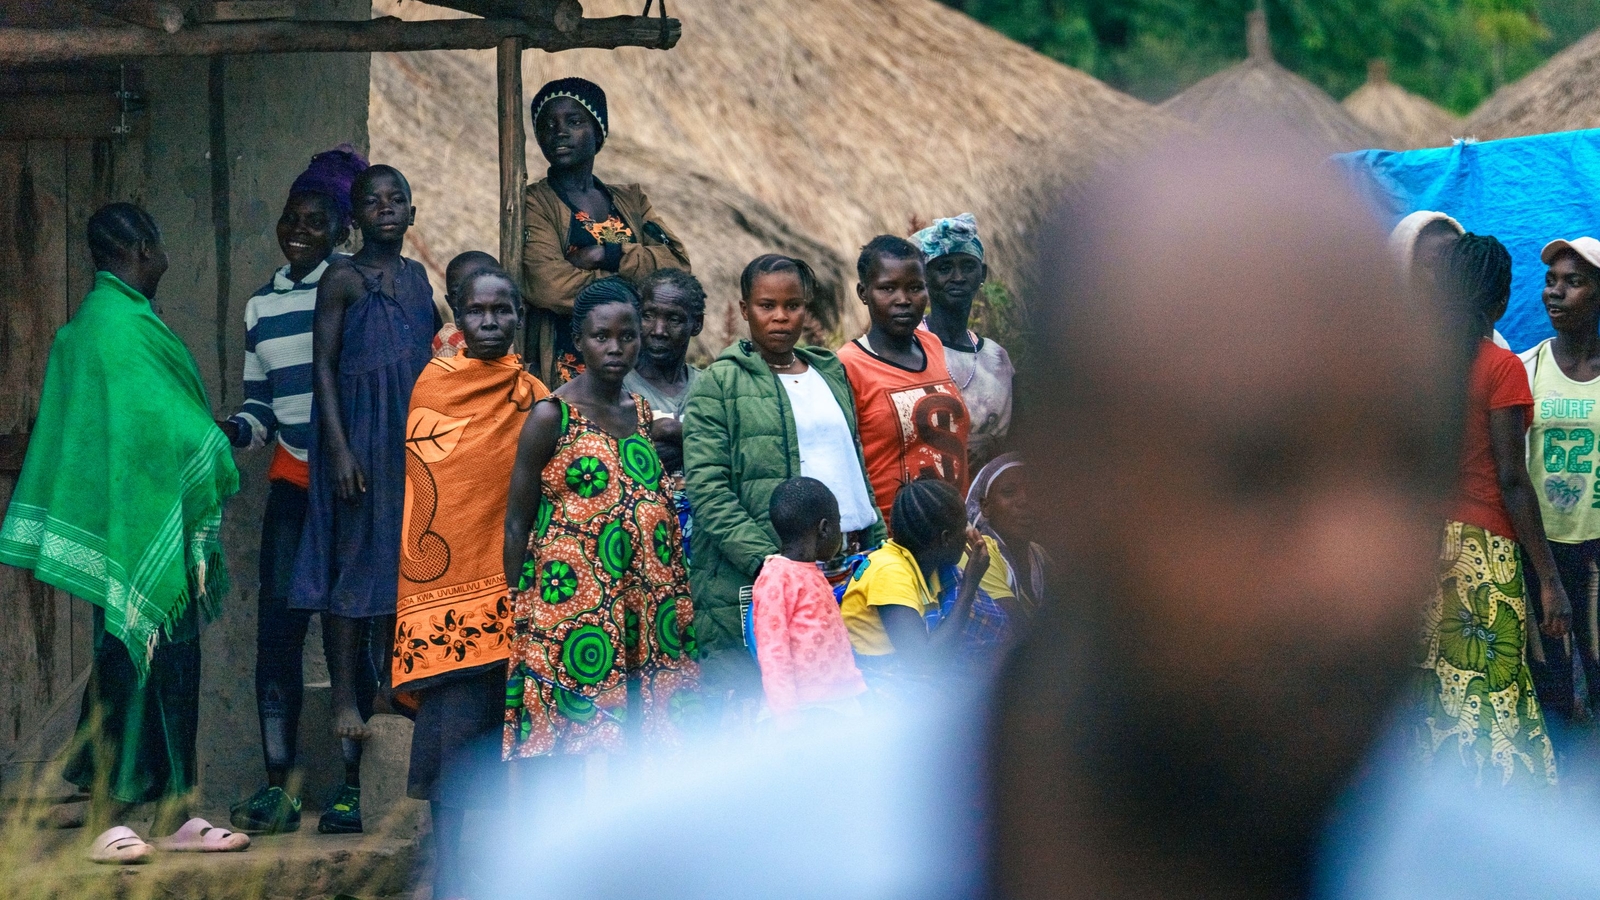 Groupe of people, Koboko, Uganda